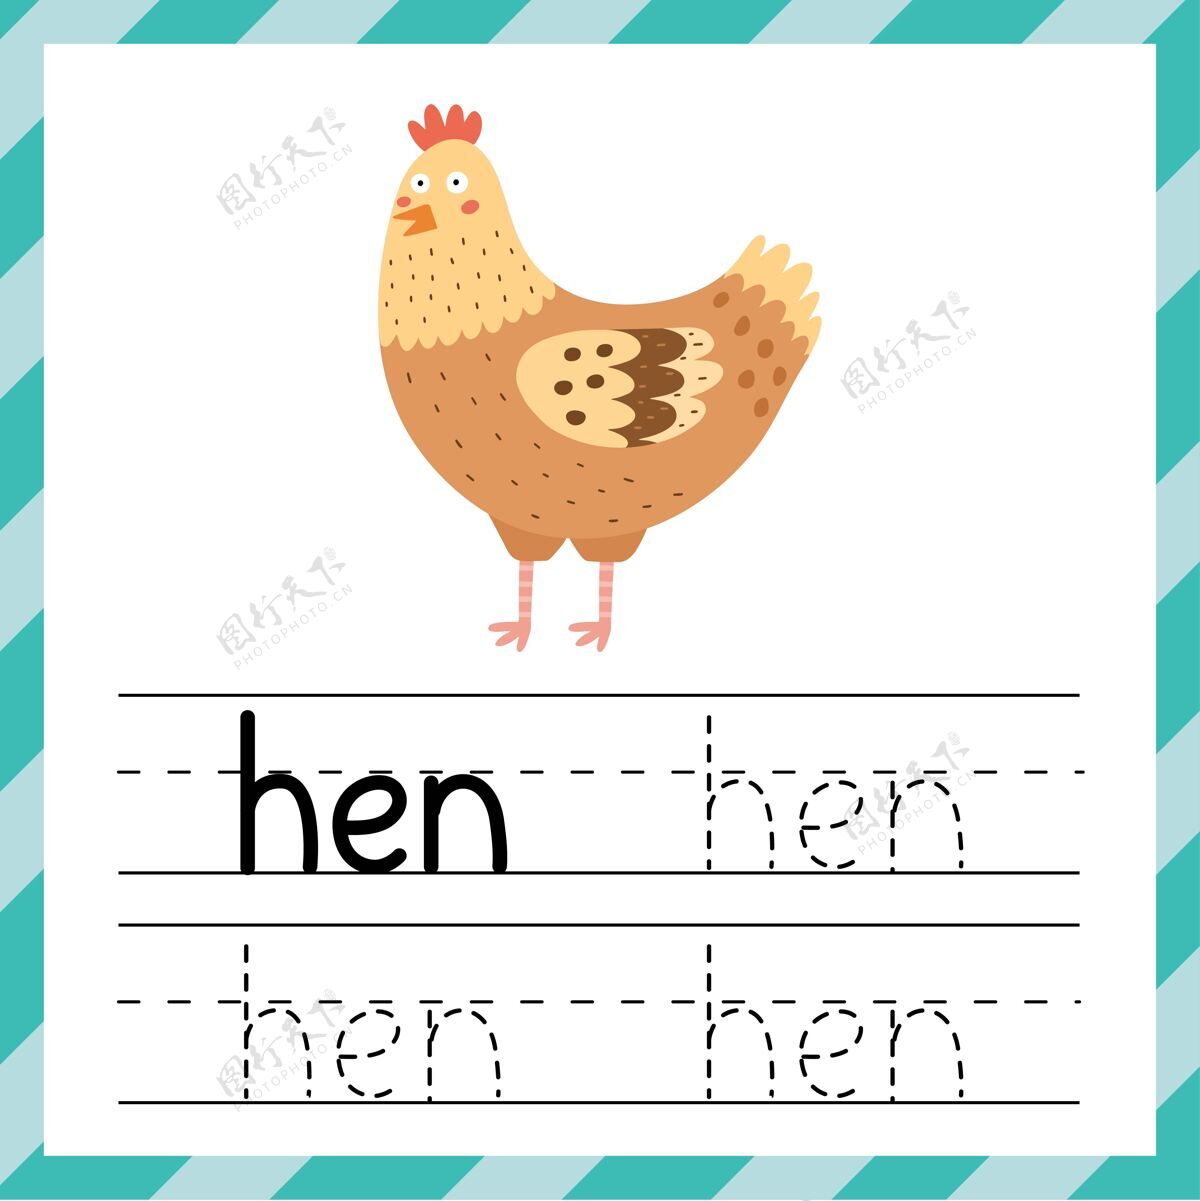 线条单词追踪工作表-母鸡学习儿童用品手写简单活动